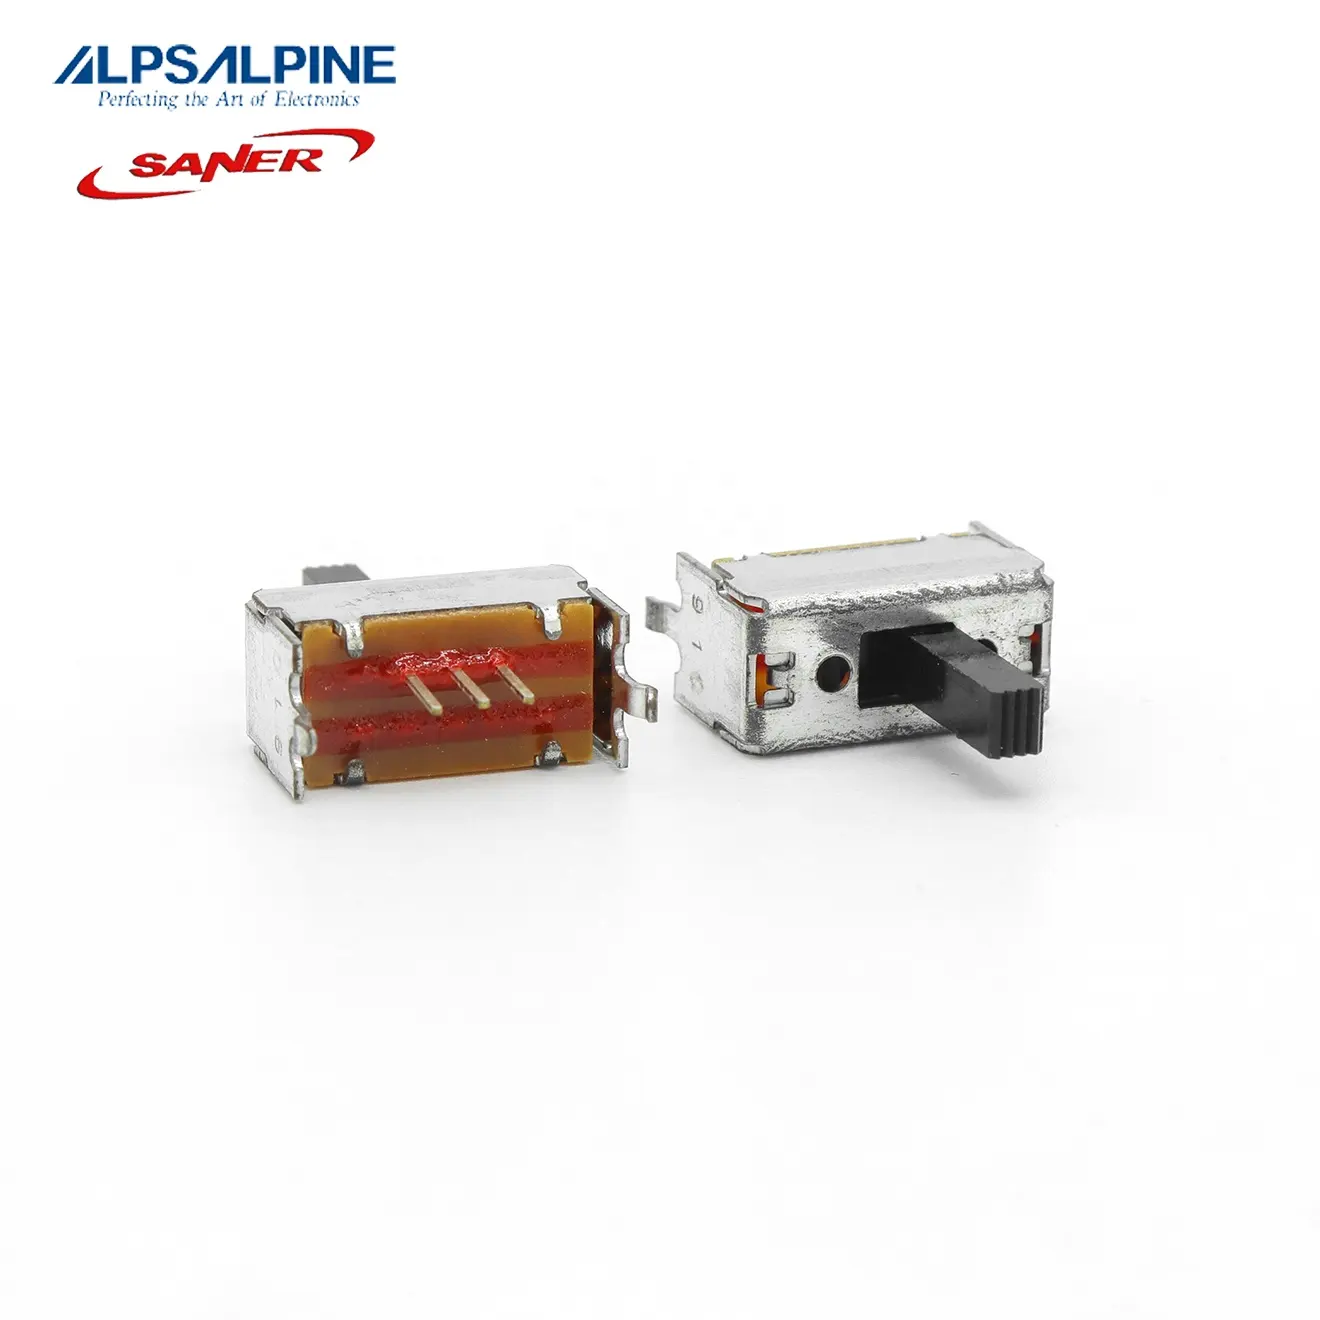 ALPS SSSF012100 8.5 مللي متر 2mm-Travel نوع الوكيل المعتمد حقيقية ضمان الشريحة التبديل